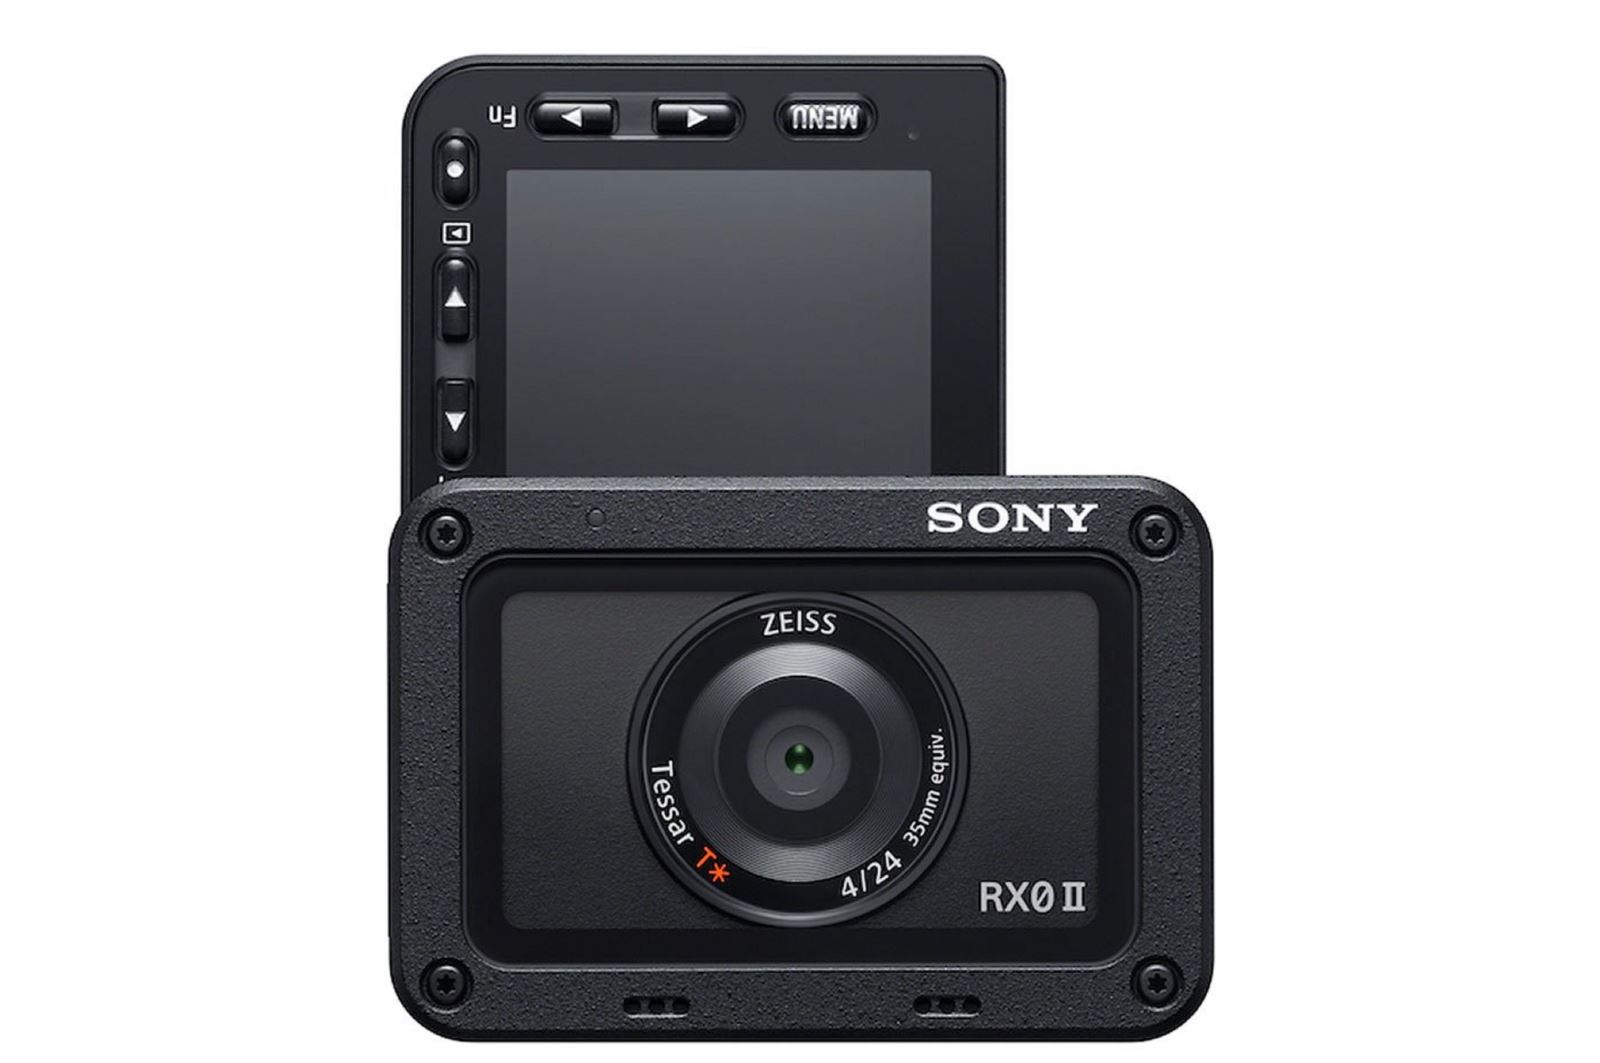 Sony ra mắt máy ảnh RX0 II: màn hình xoay lật, video 4K, giá 698$